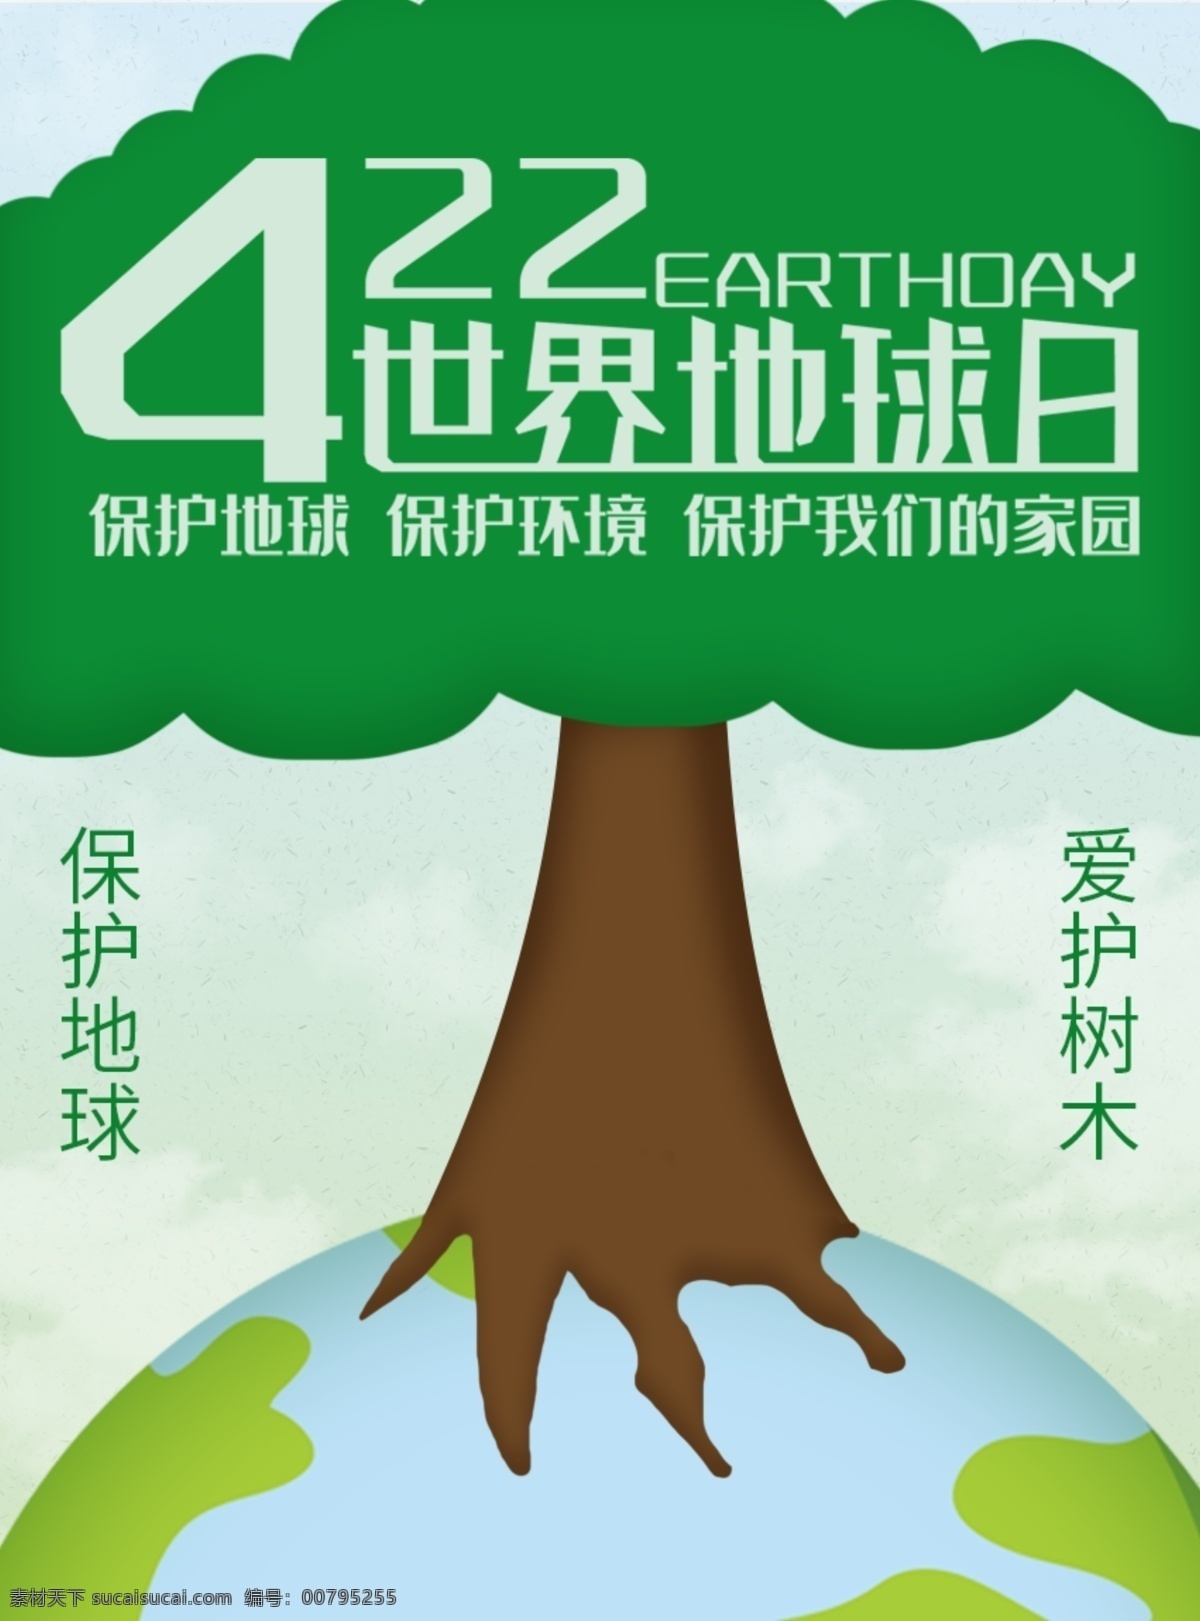 原创 世界 地球日 世界地球日 保护环境 爱护树木 保护地球 参天大树